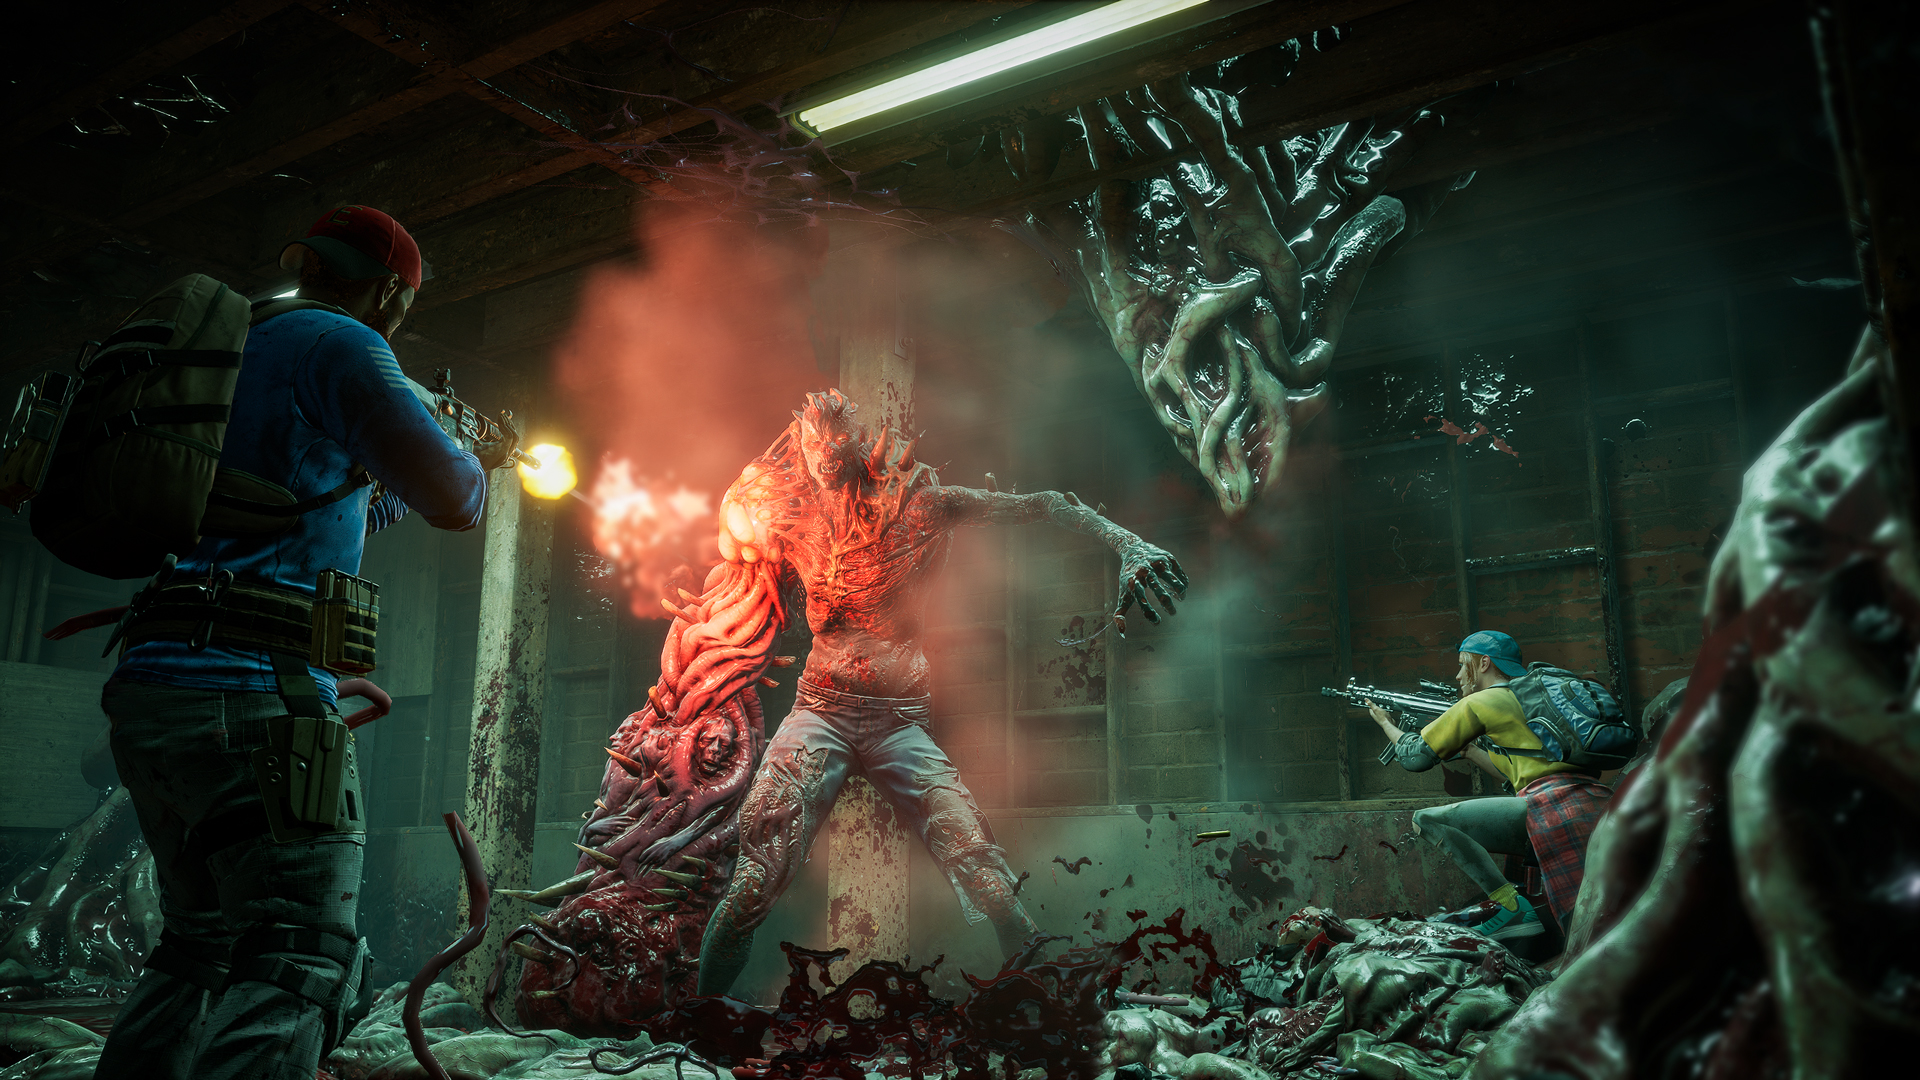 Does Back 4 Blood have split-screen co-op multiplayer? - GameRevolution